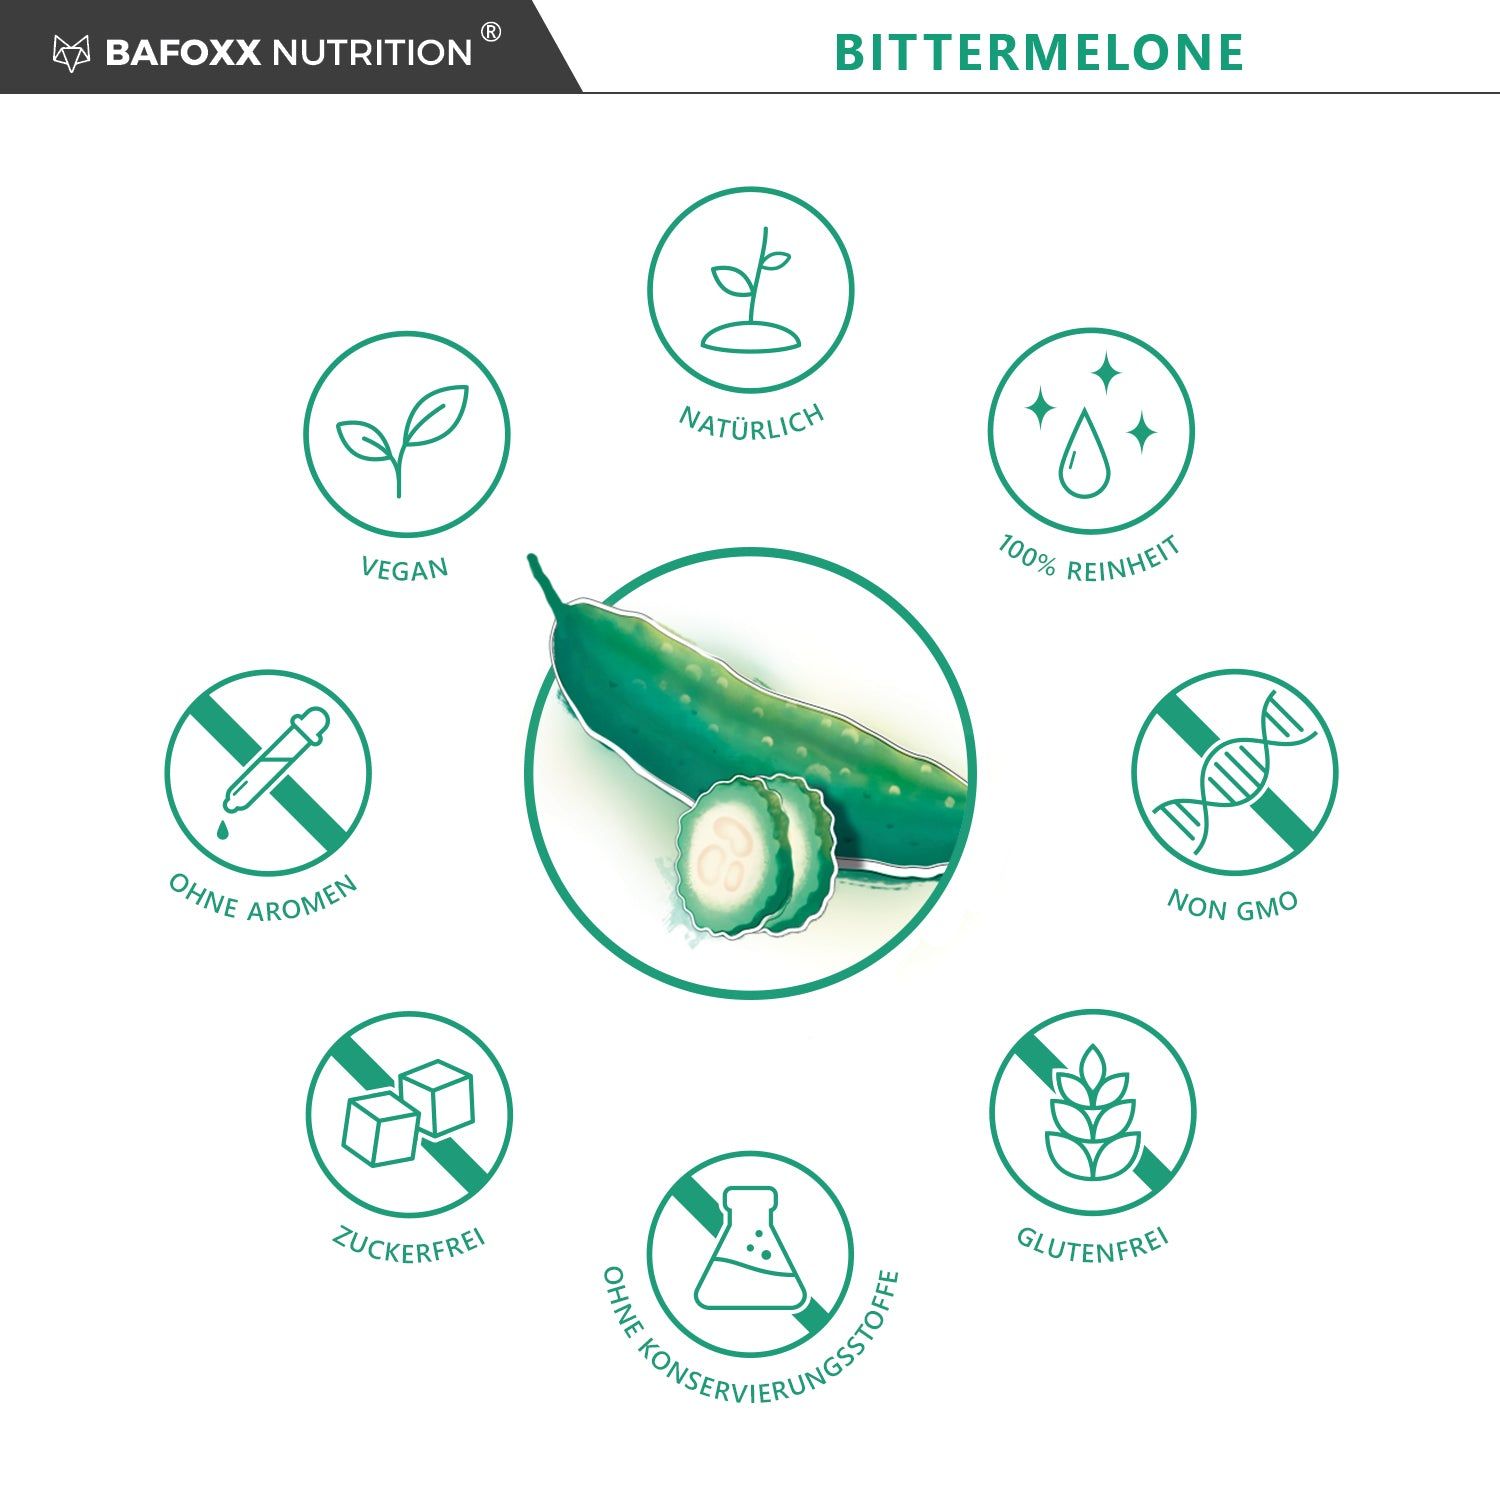 BAFOXX Nutrition® Bittermelone Kapseln